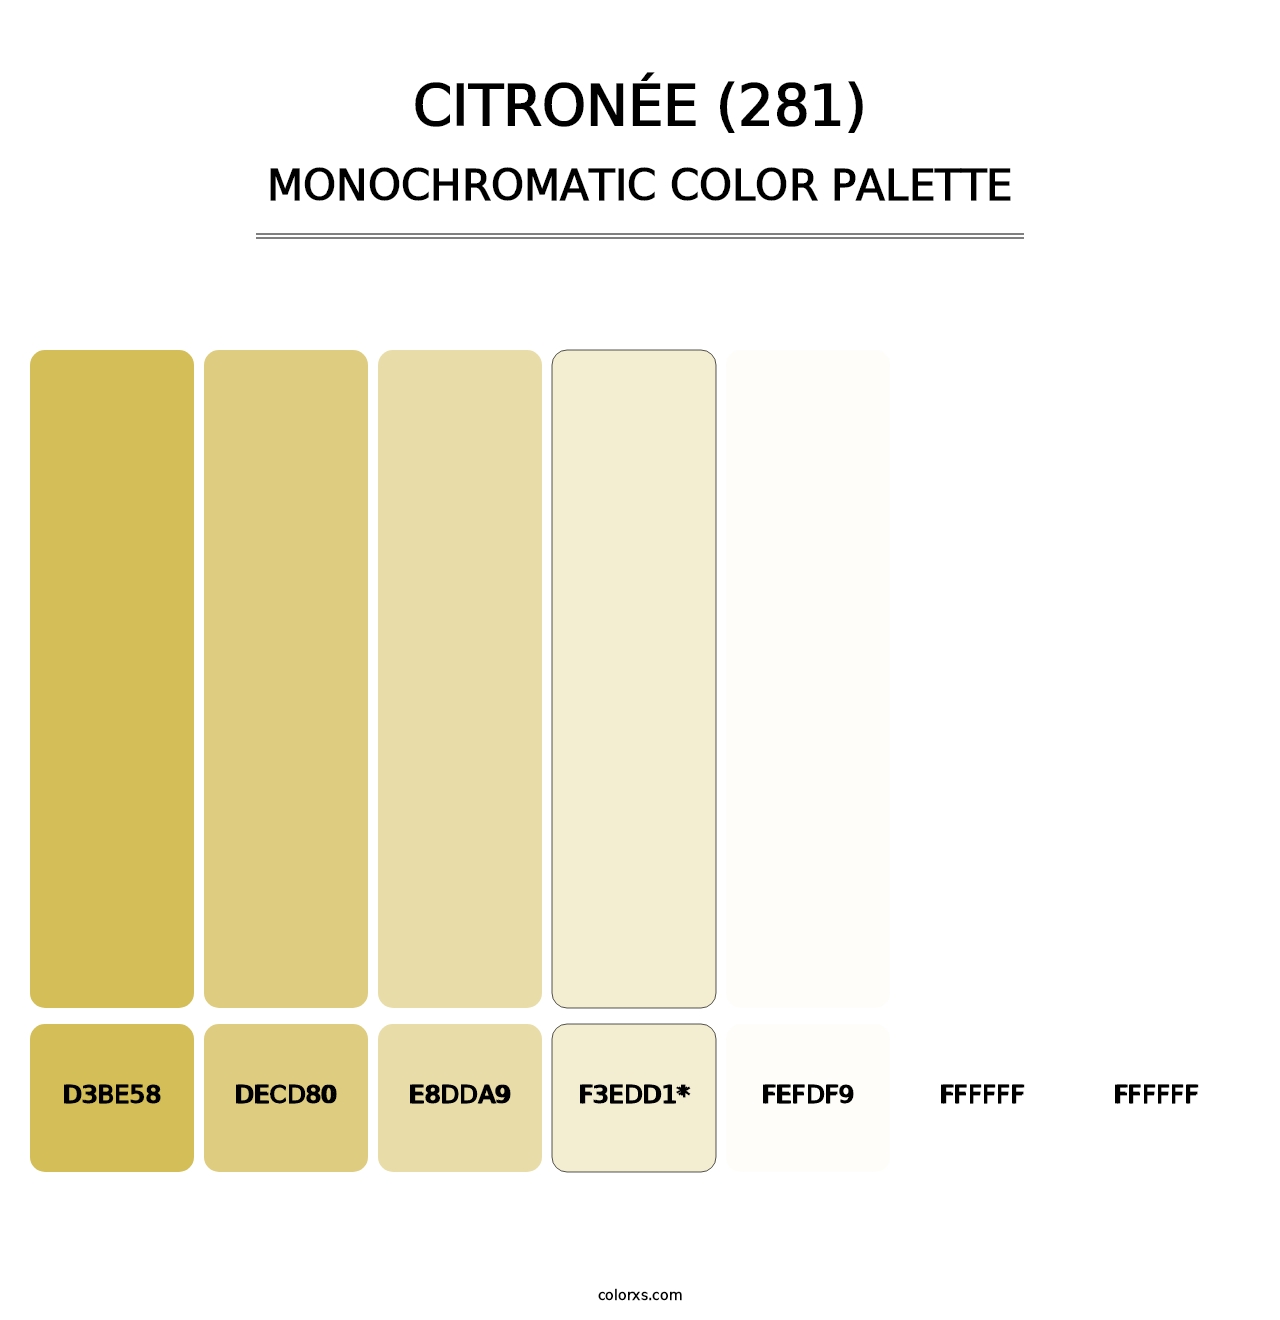 Citronée (281) - Monochromatic Color Palette